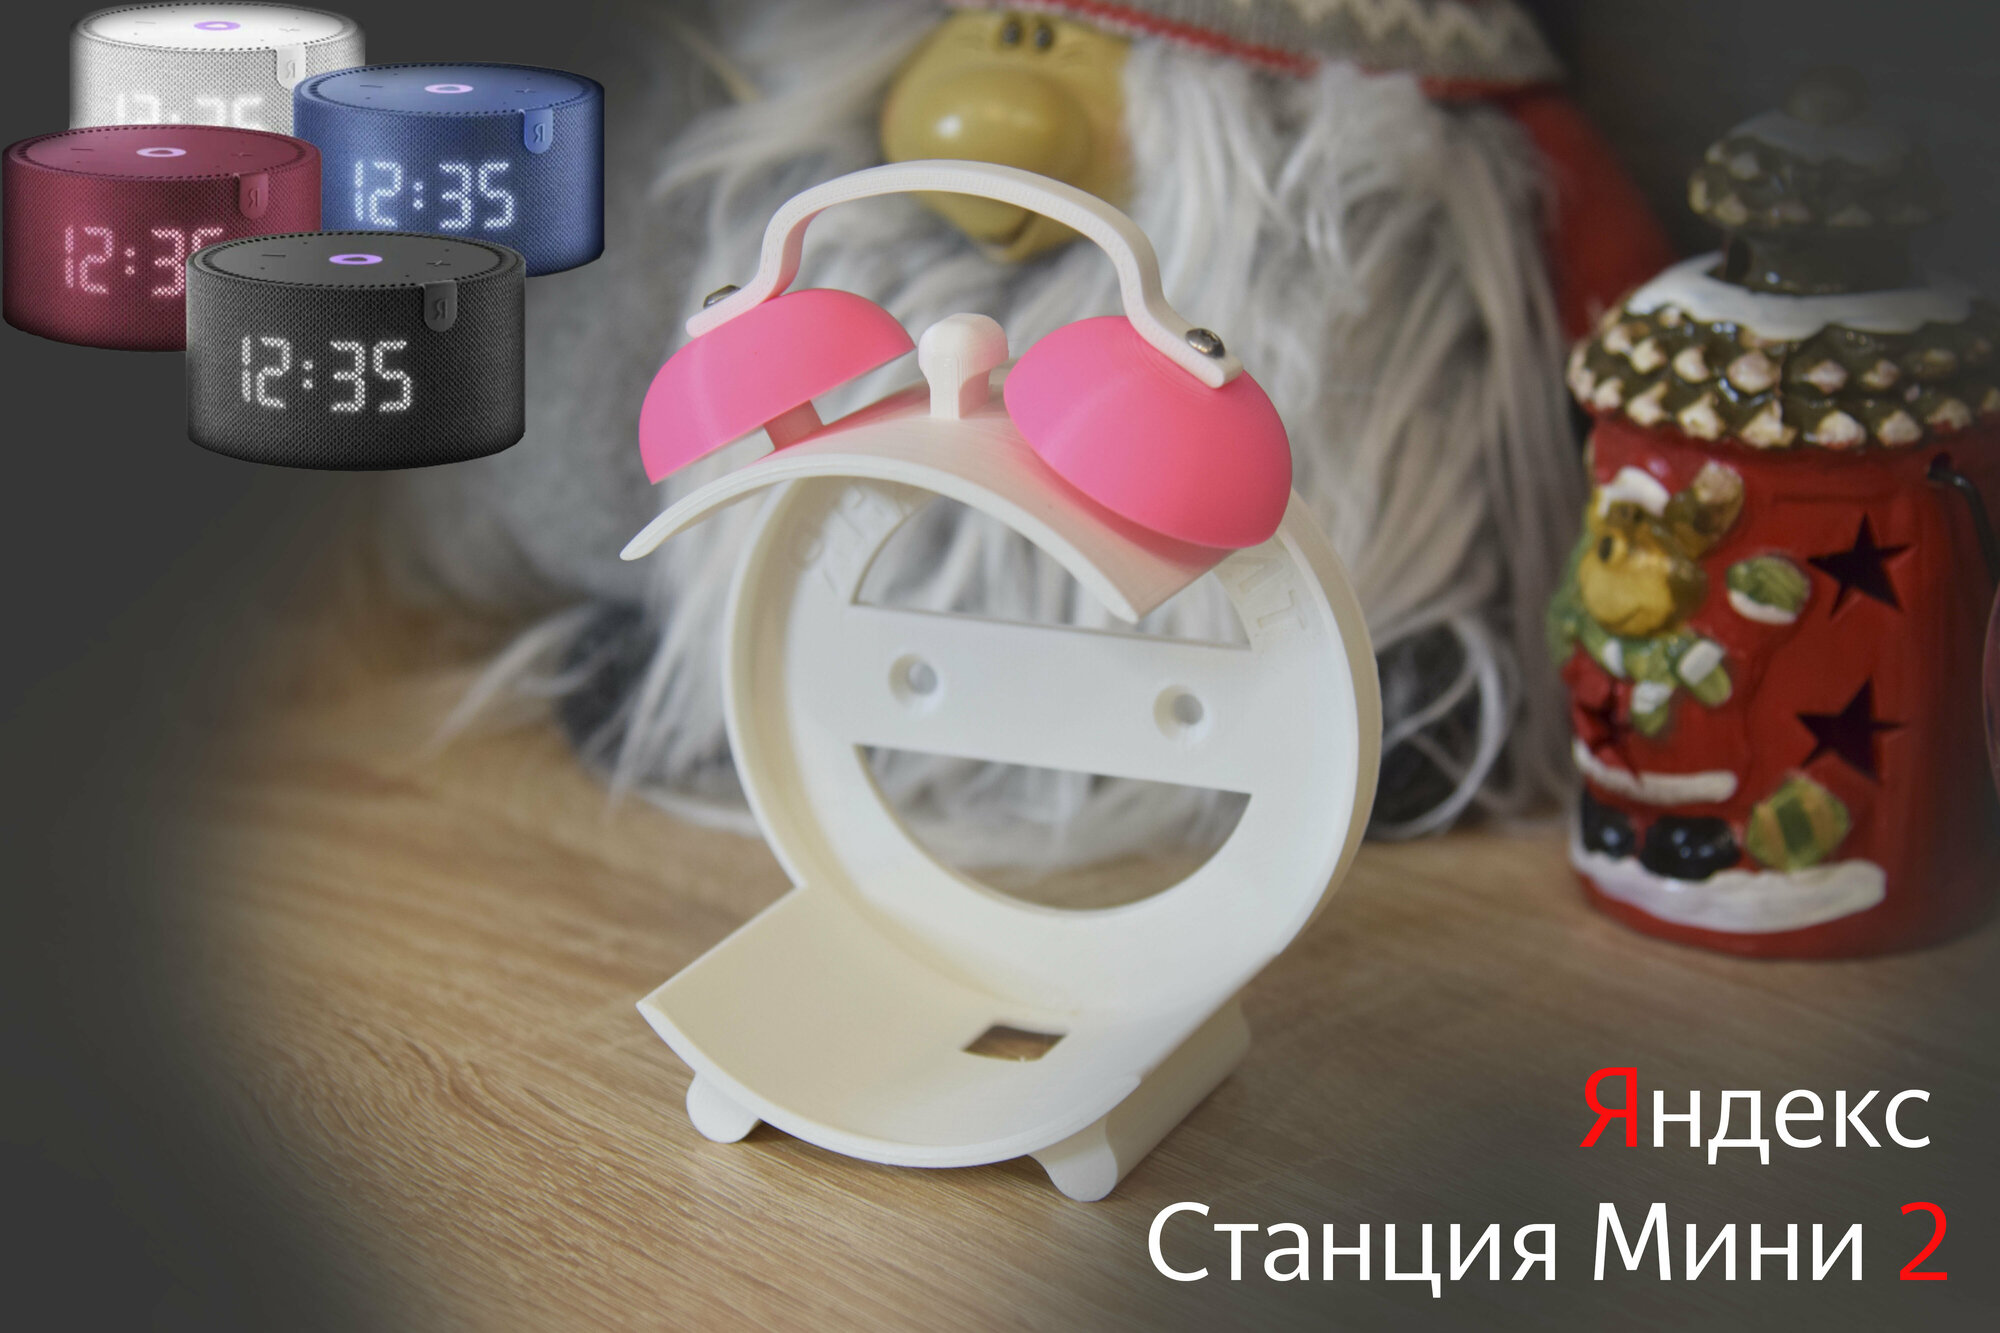 Подставка для Яндекс Cтанции Мини 2 (с часами и без часов) (белая с розовым)